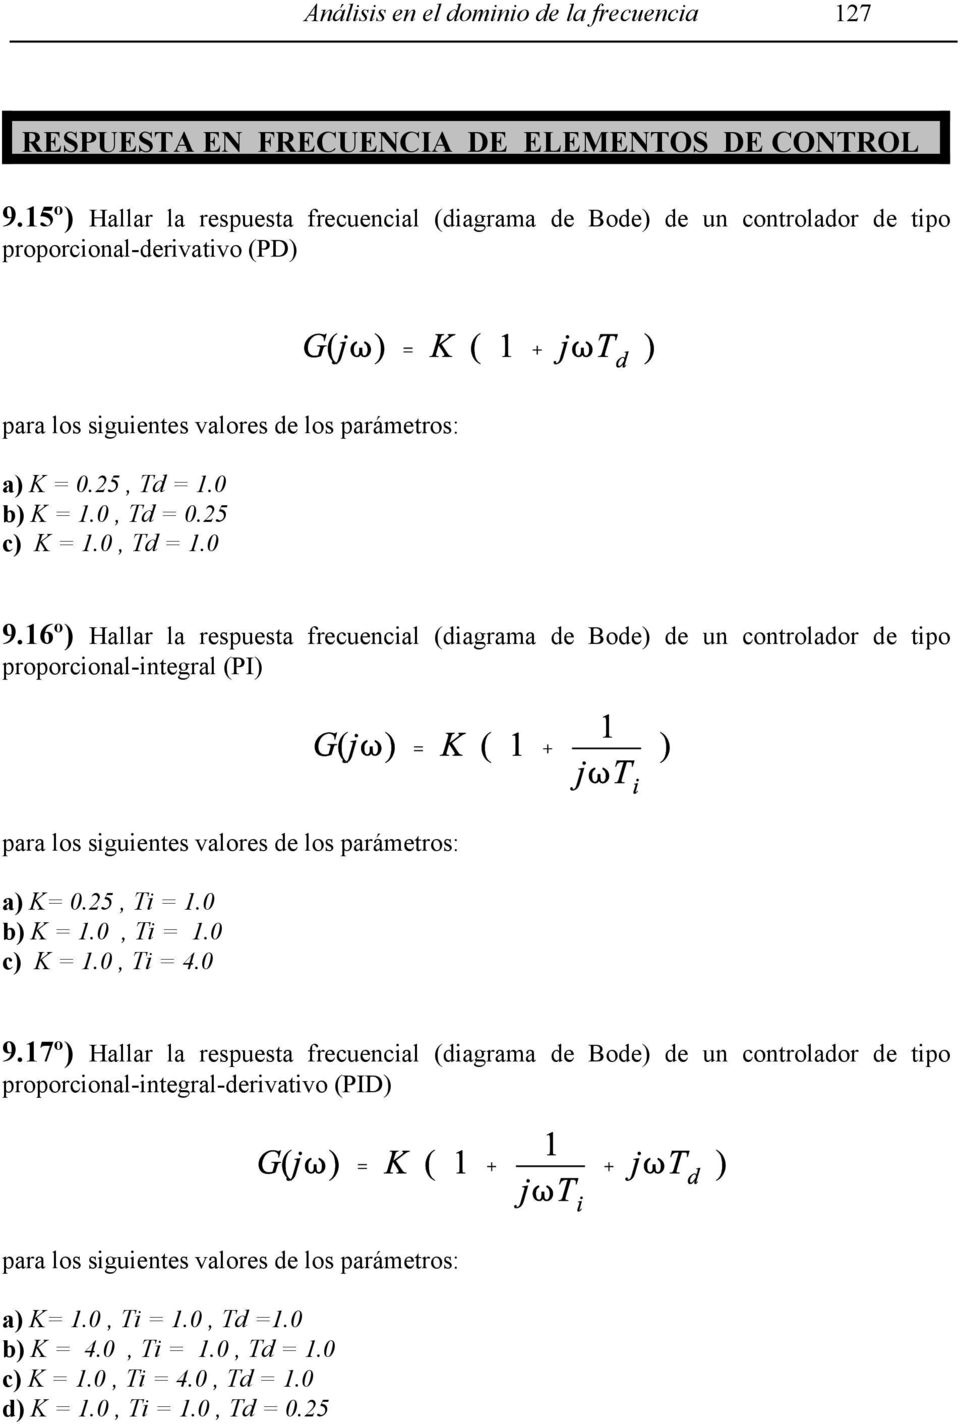 25 c) K = 1.0, Td = 1.0 9.16º) Hallar la respuesta frecuencial (diagrama de Bode) de un controlador de tipo proporcional-integral (PI) para los siguientes valores de los parámetros: a) K= 0.